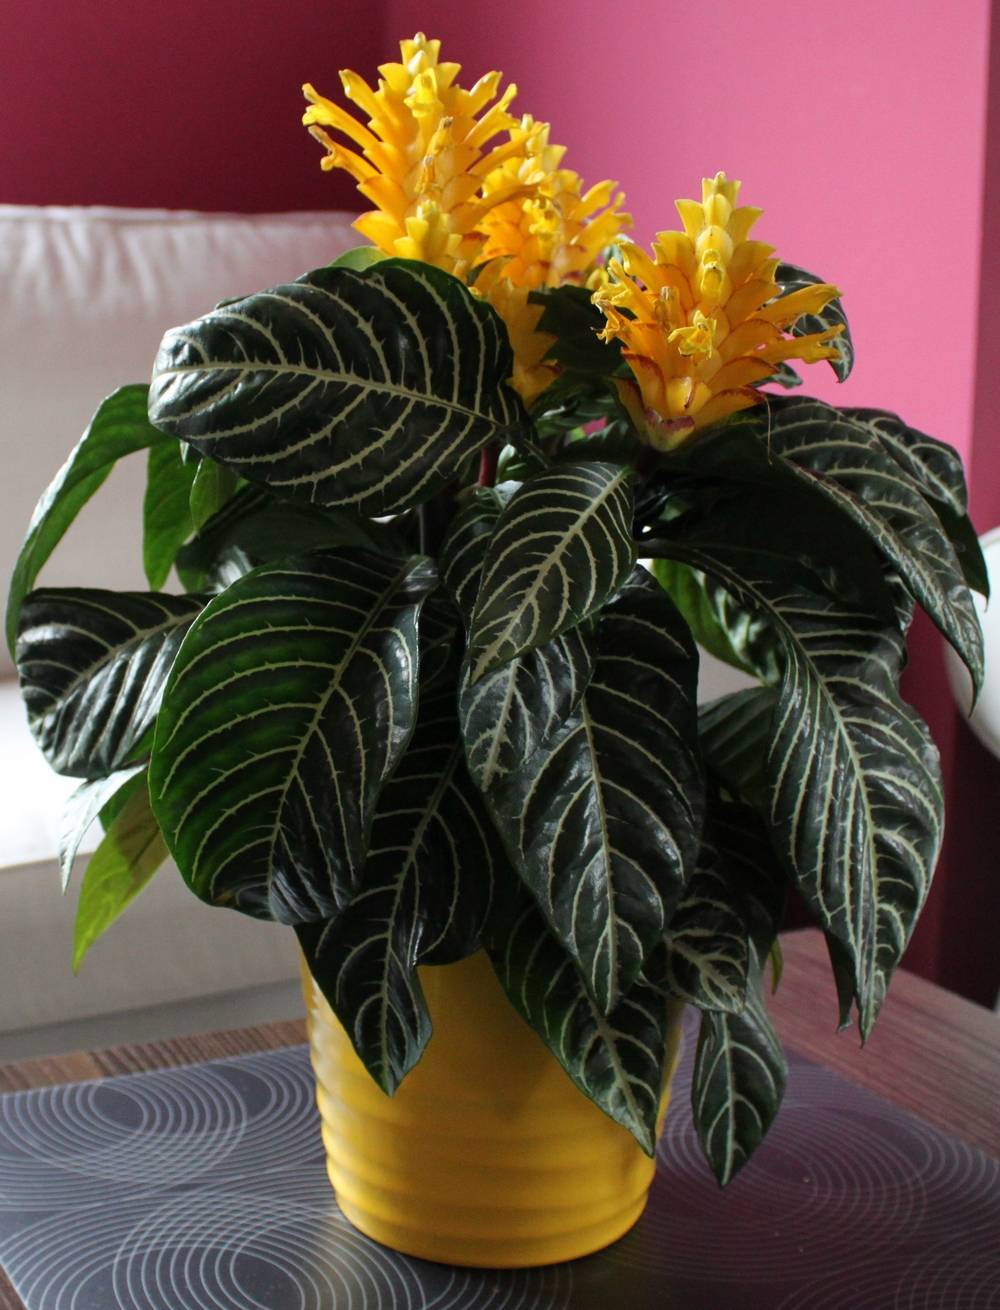 Санчезия, или санхезия — комнатная новинка из тропиков. уход в домашних условиях. фото — ботаничка